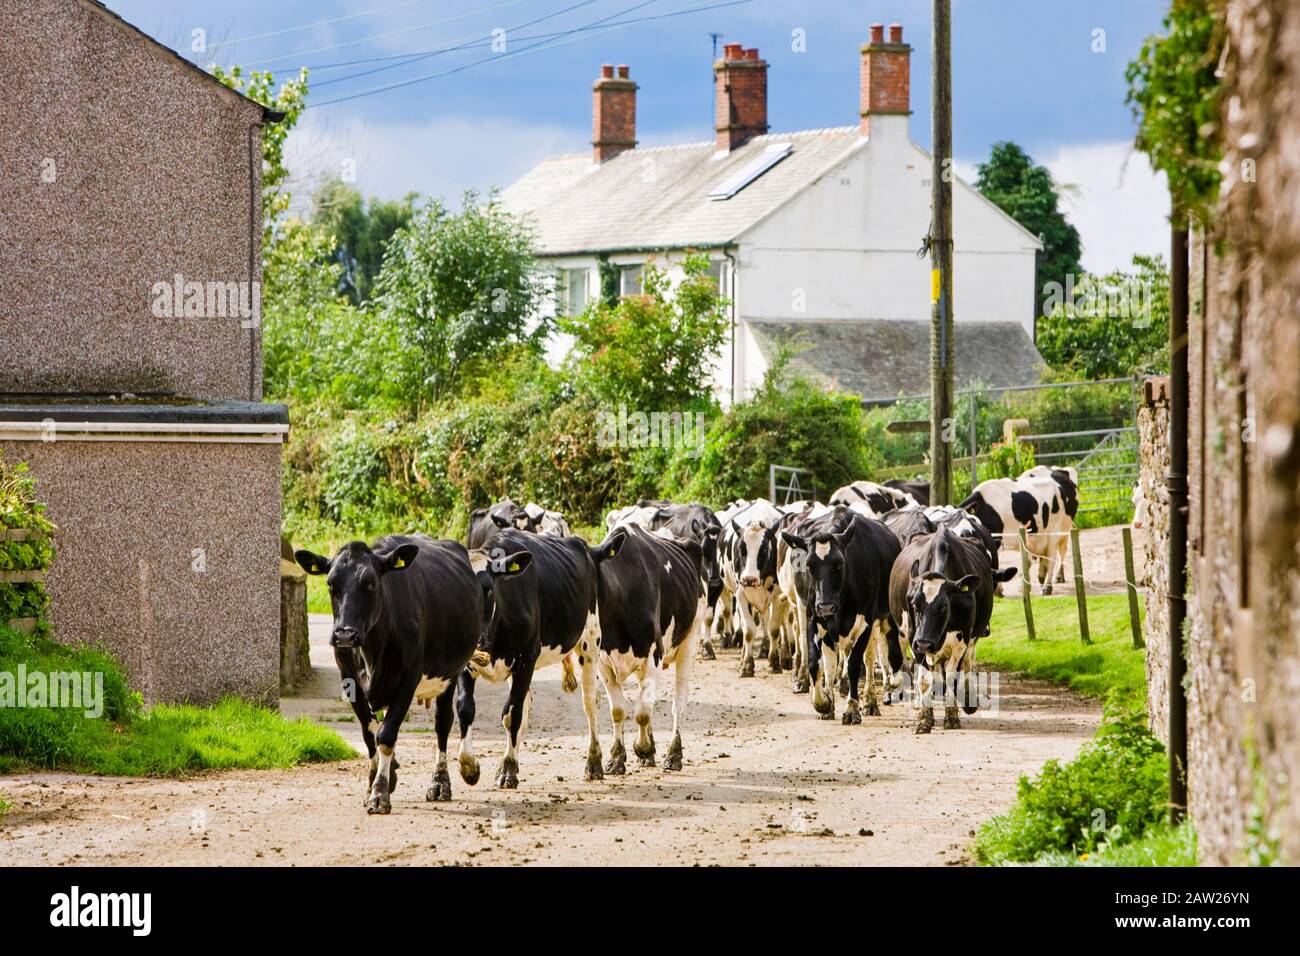 Troupeau de vaches laitières marchant vers une ferme sur une voie rurale, Angleterre, Royaume-Uni Banque D'Images